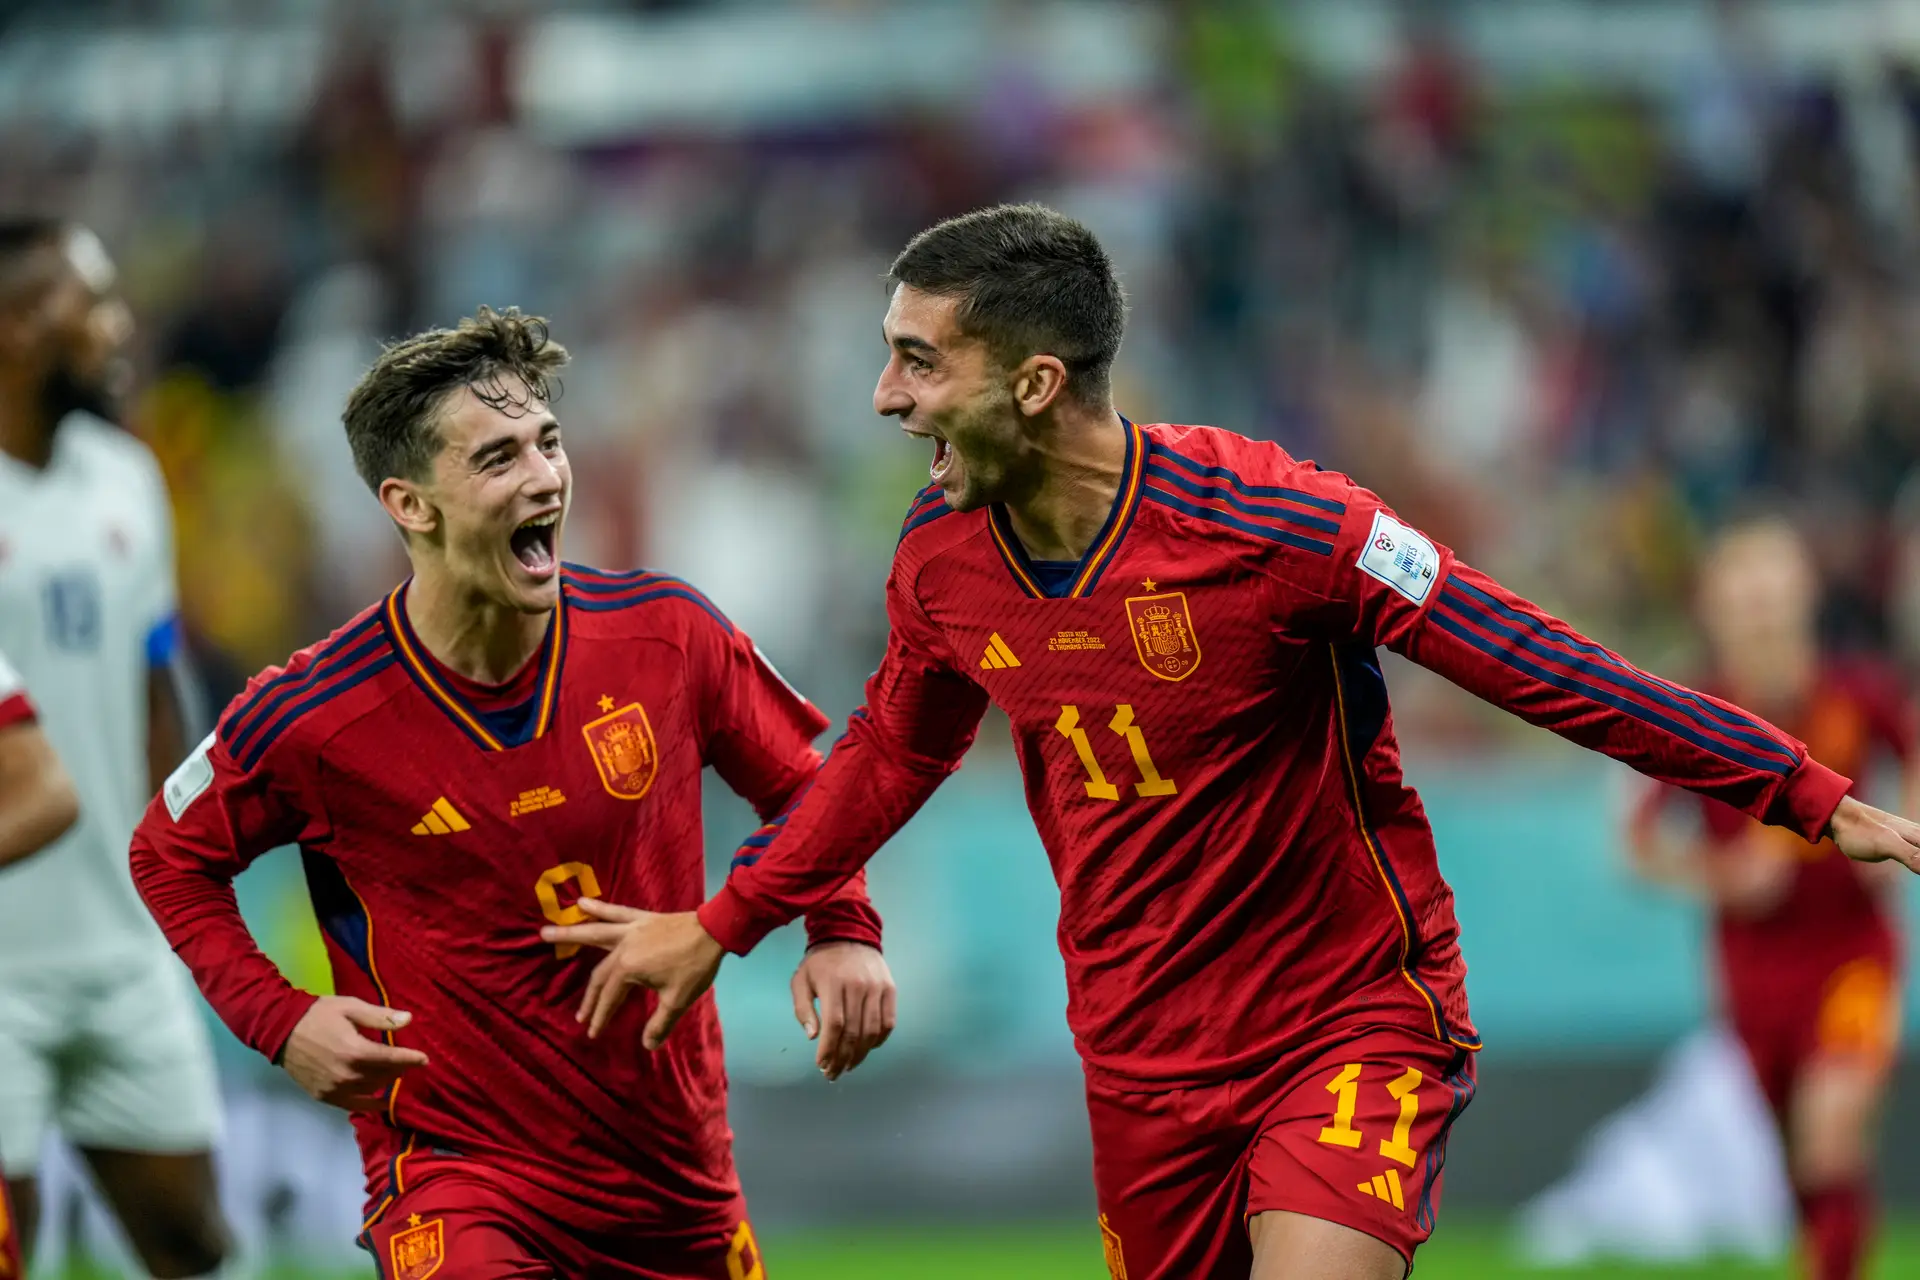 Espanha amassa a Costa Rica e bate recorde com goleada histórica -  23/11/2022 - UOL Esporte